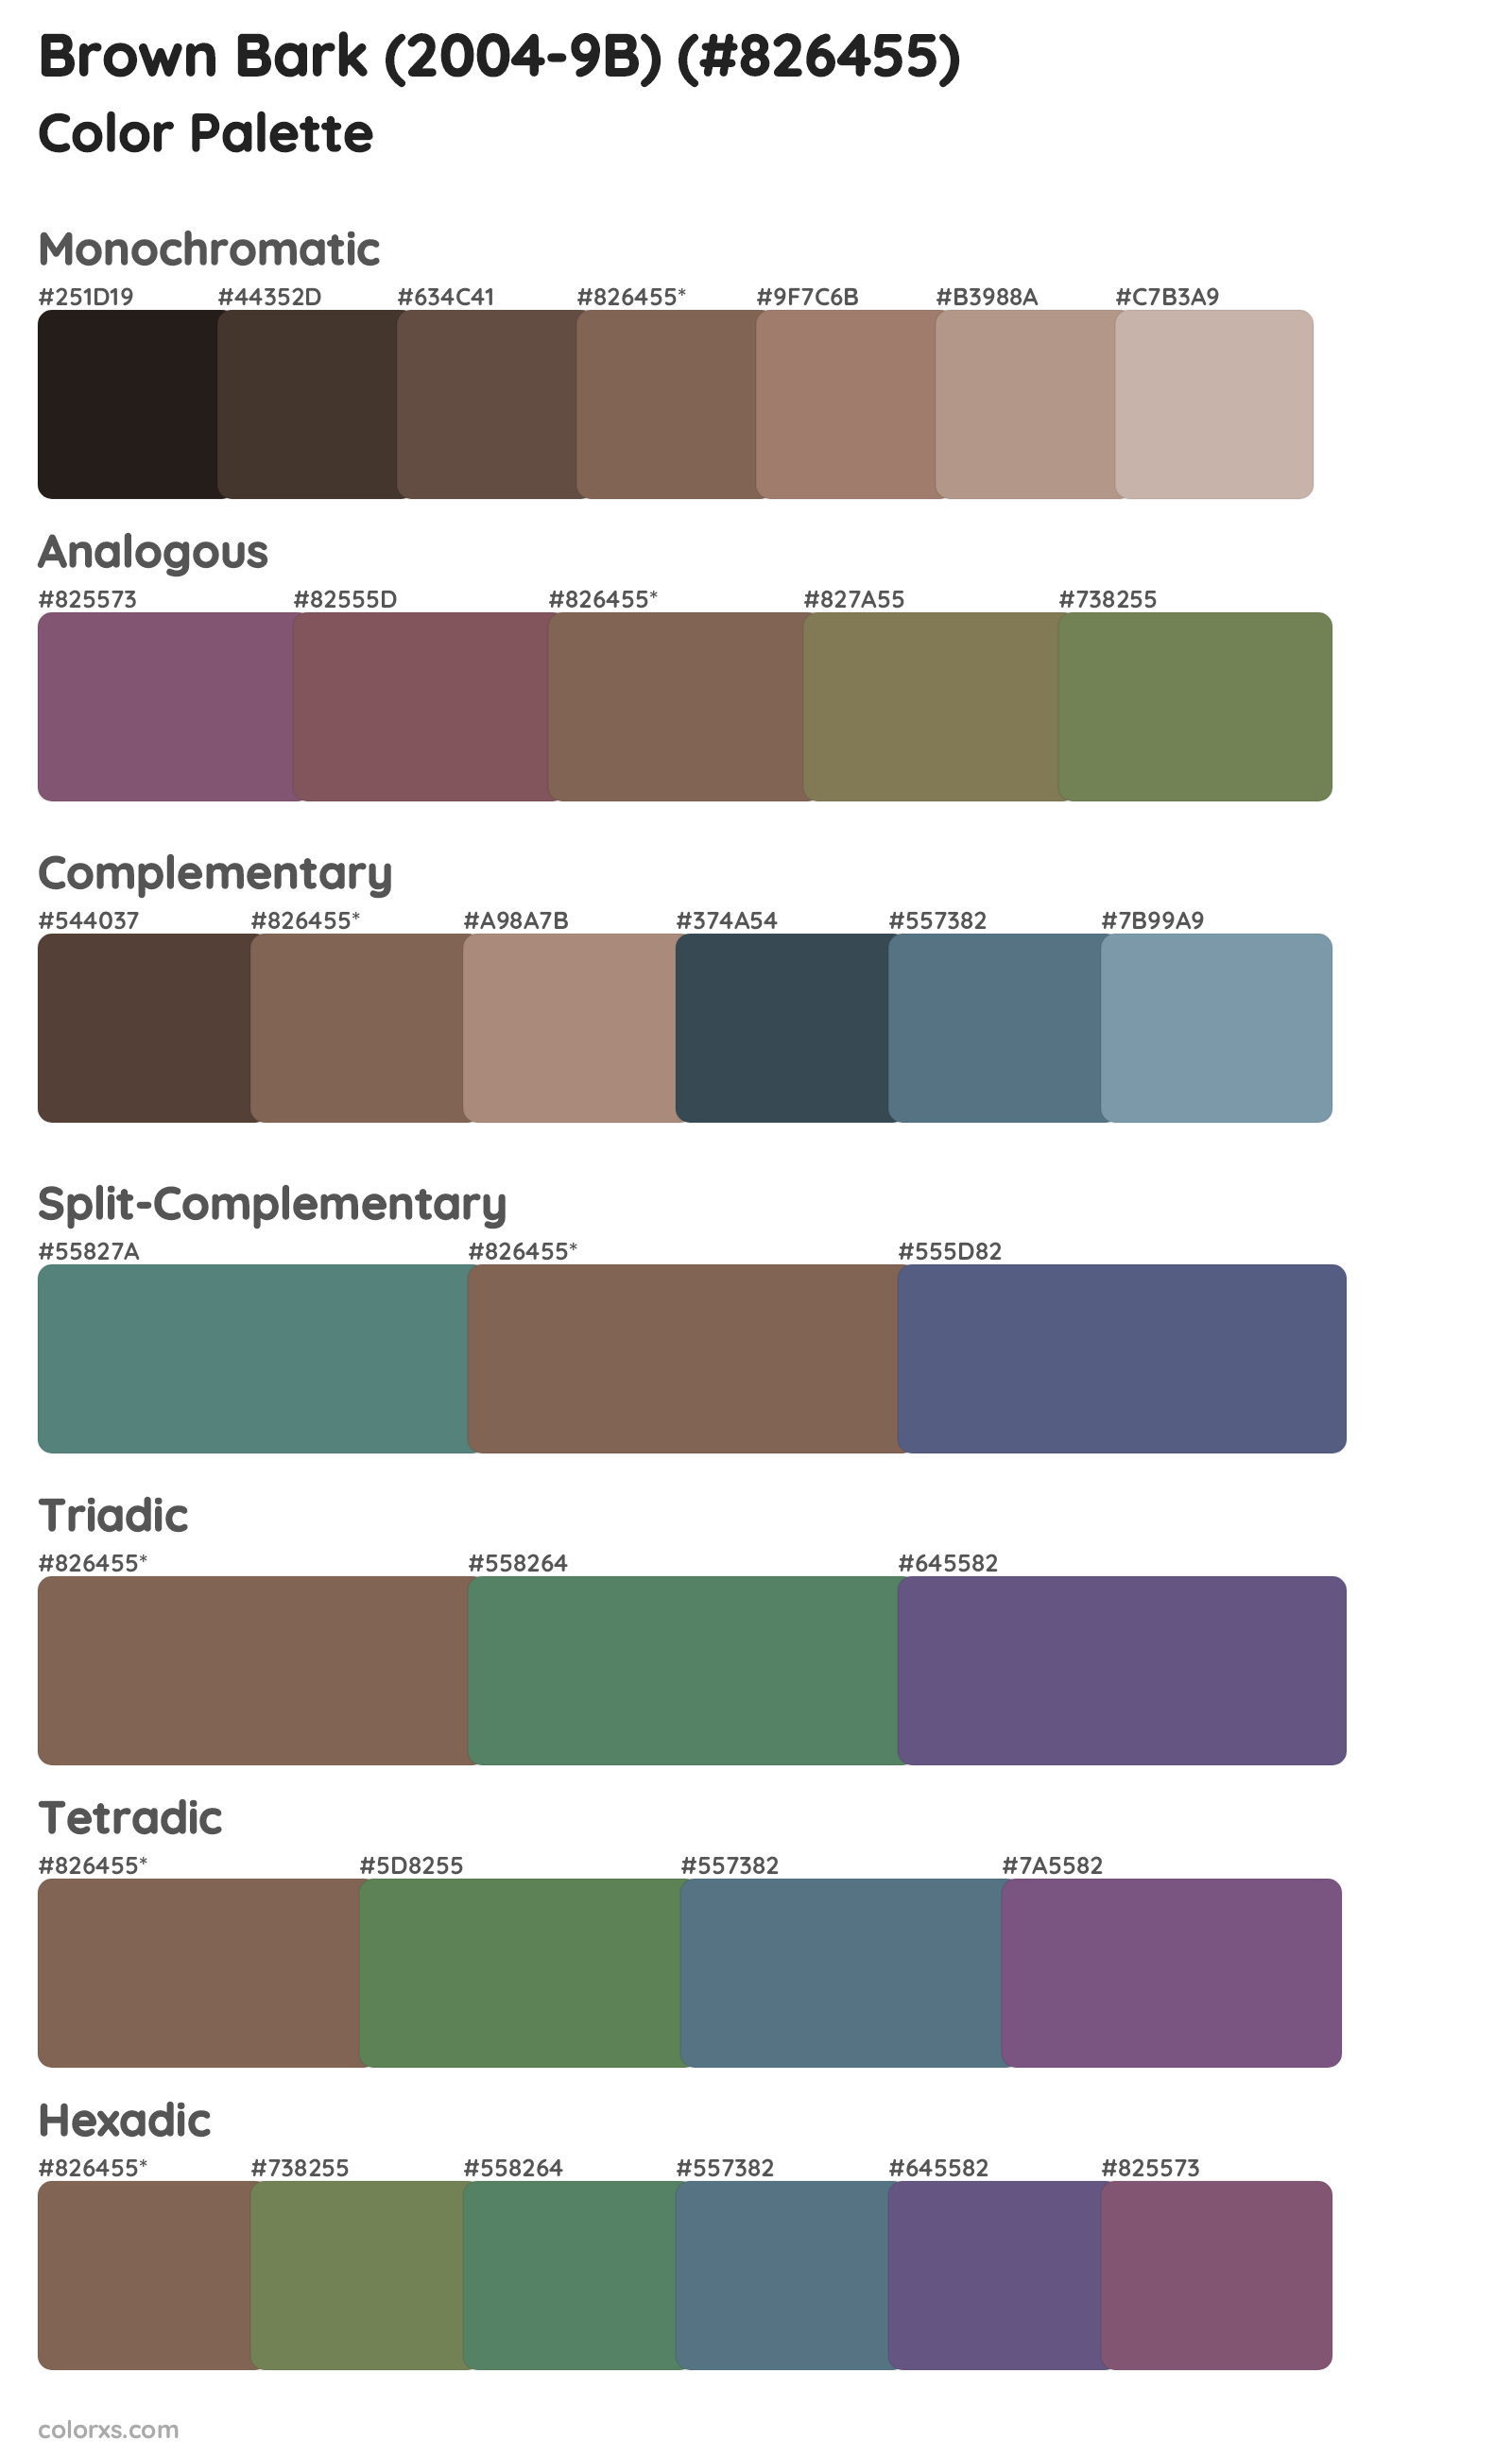 Brown Bark (2004-9B) Color Scheme Palettes